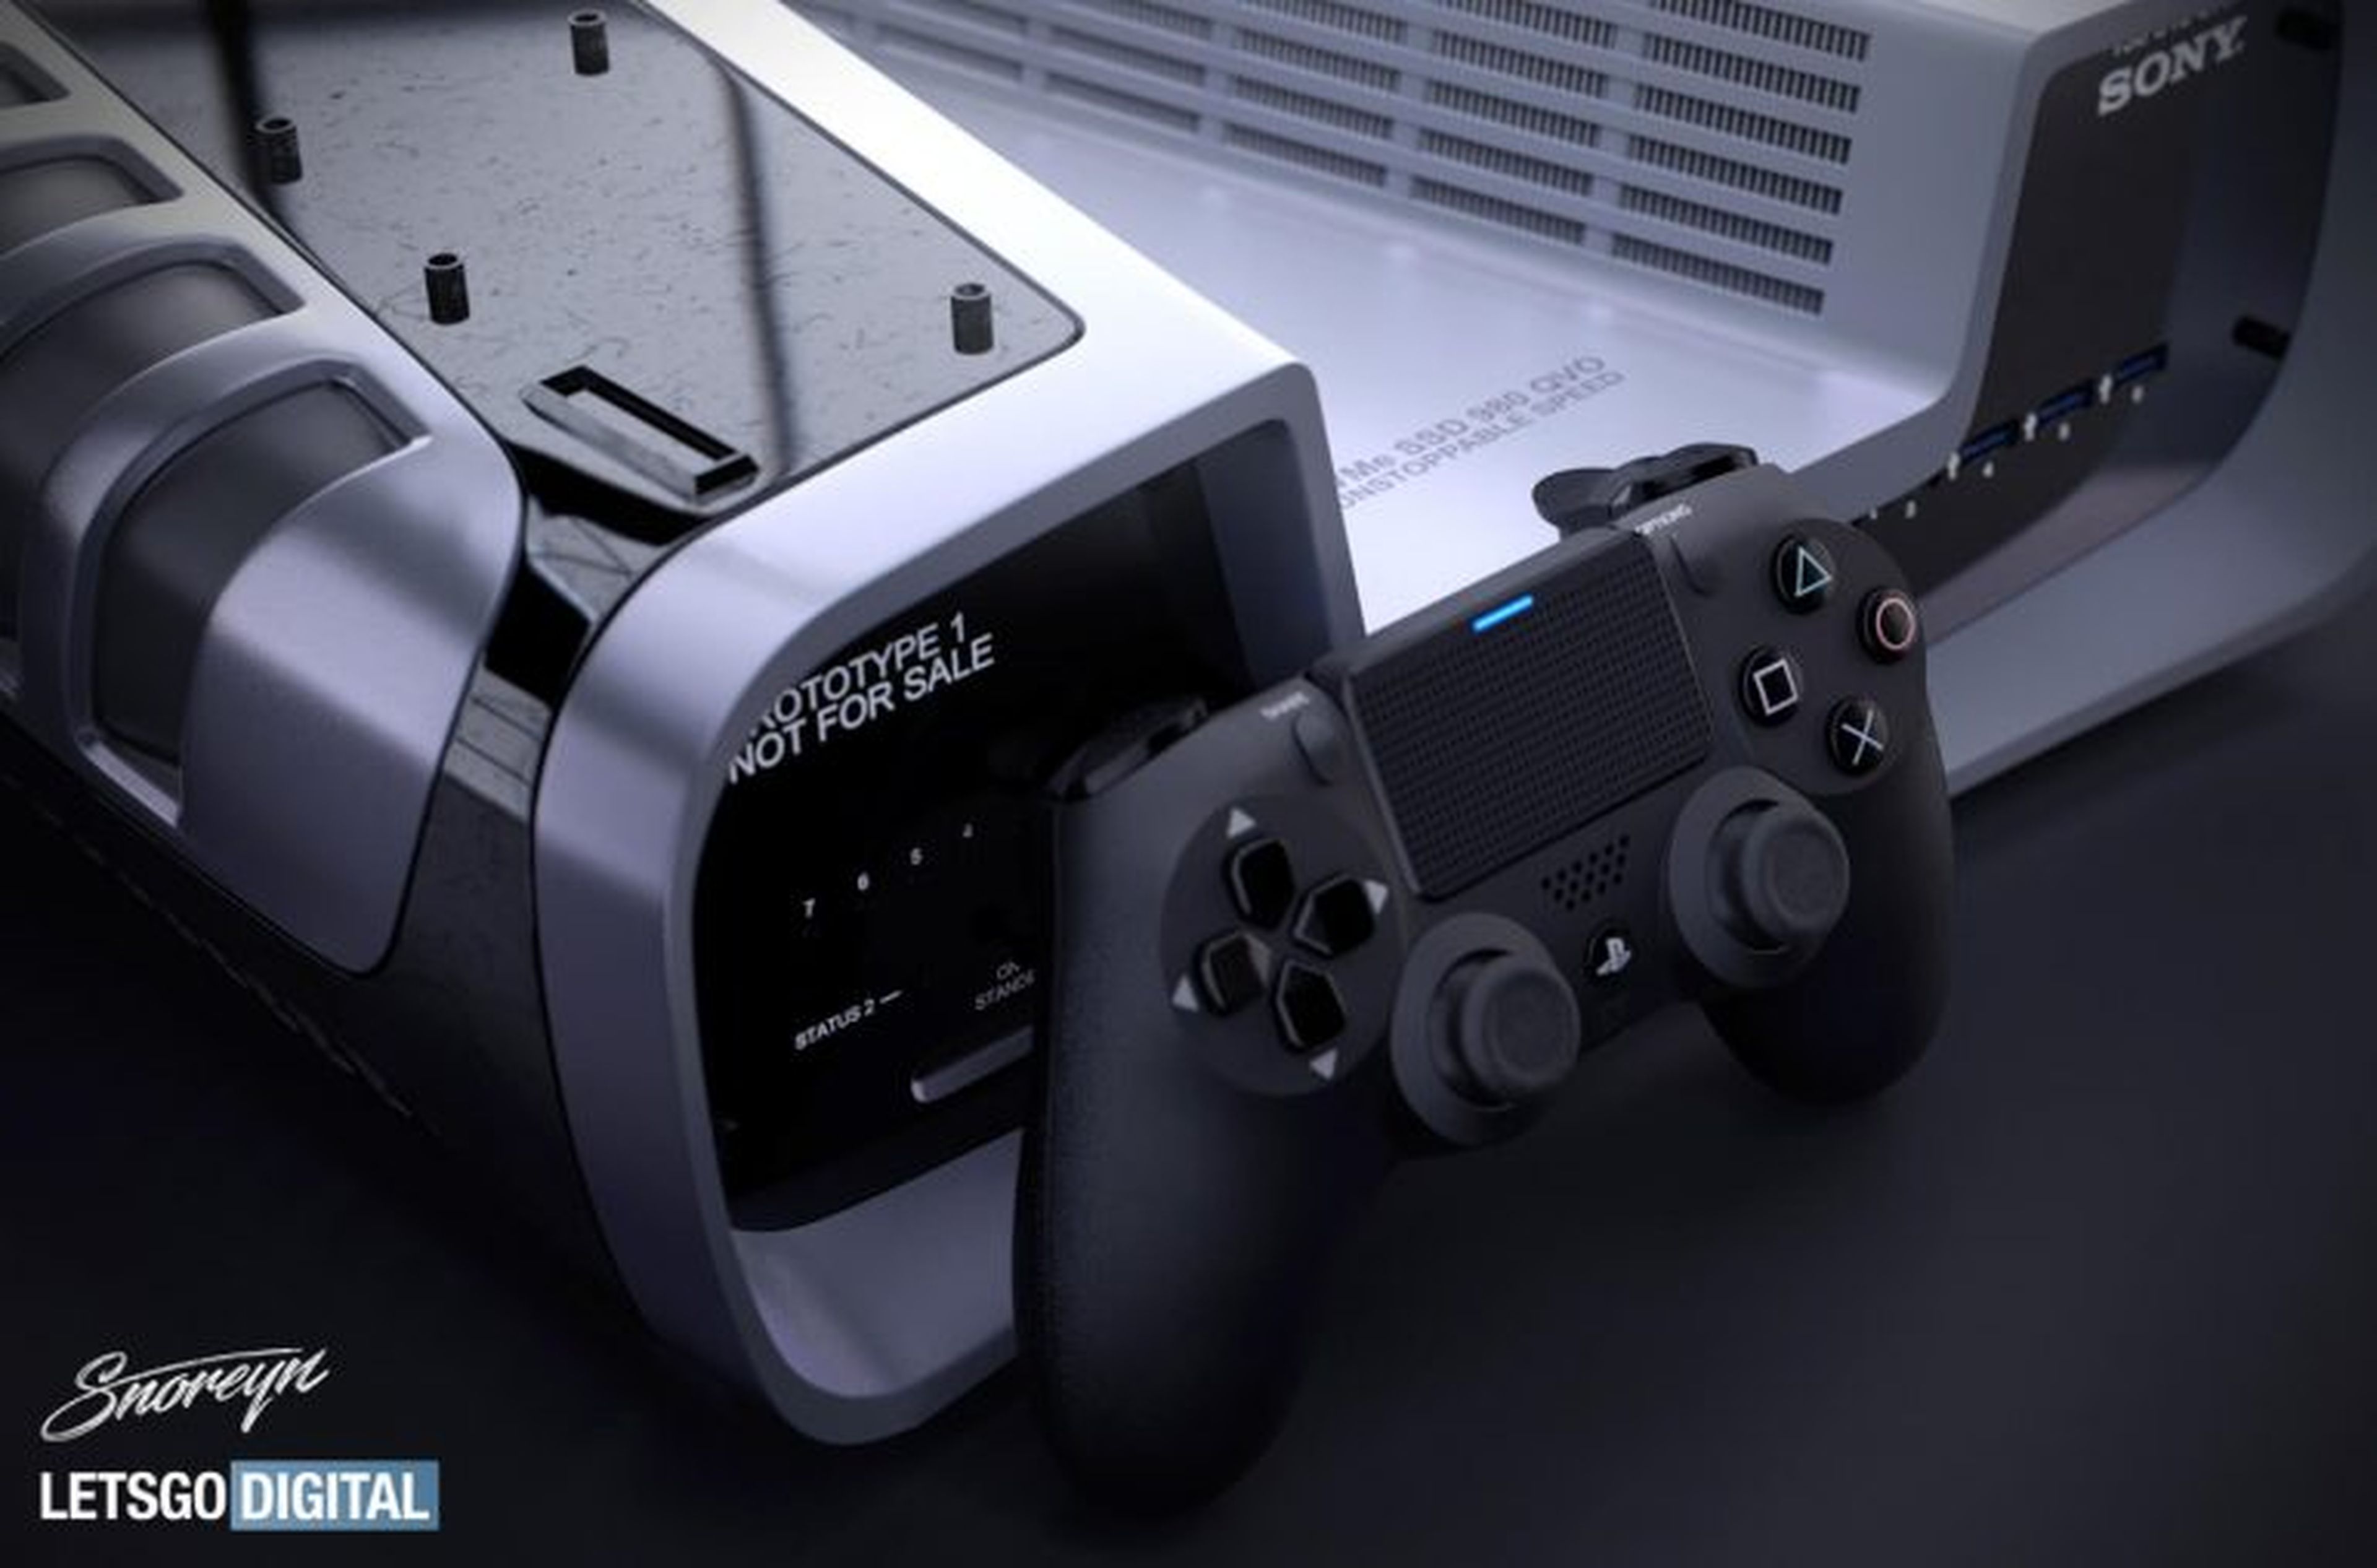 Sony podía haber reinventado la PlayStation. Lo que va a conseguir